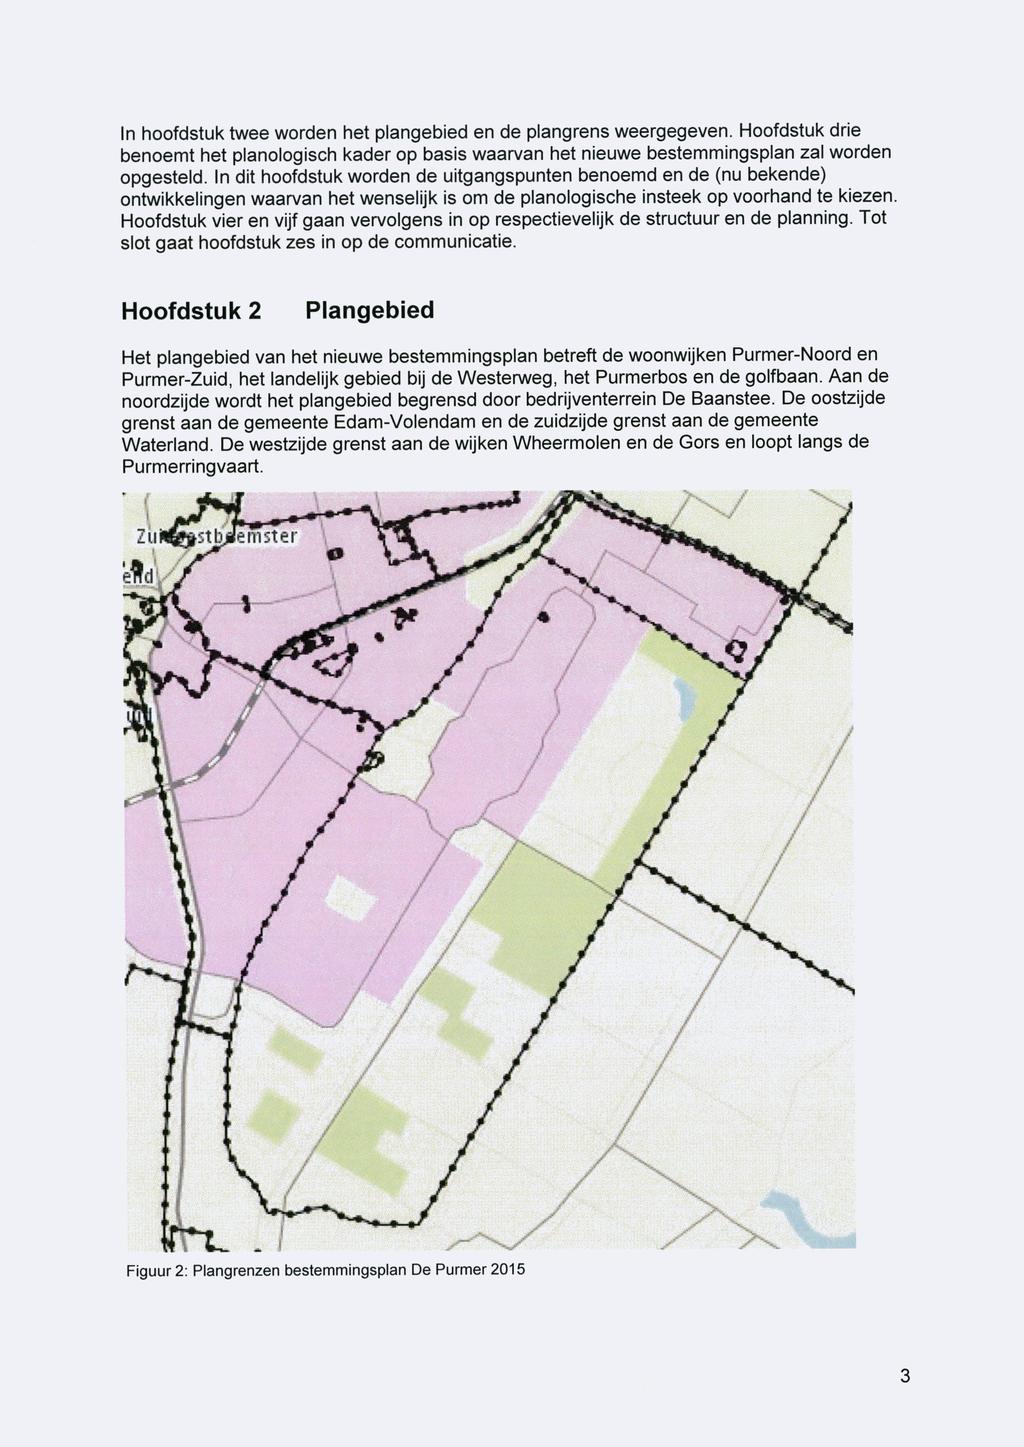 In hoofdstuk twee worden het plangebied en de plangrens weergegeven. Hoofdstuk drie benoemt het planologisch kader op basis waarvan het nieuwe bestemmingsplan zal worden opgesteld.